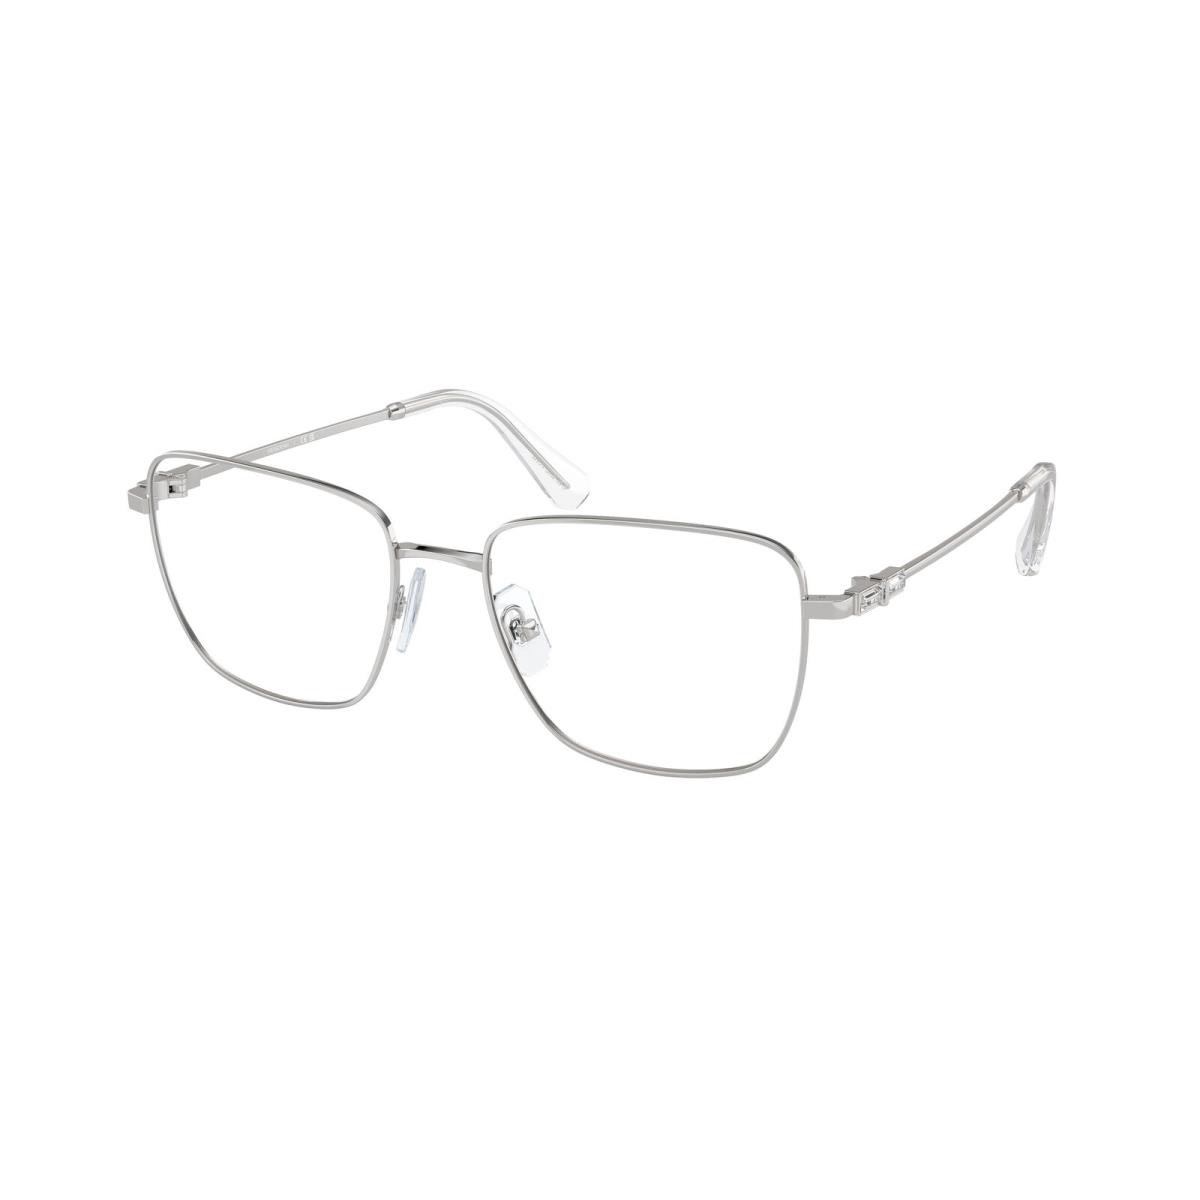 Swarovski SK 1003 Silver 4001 Eyeglasses